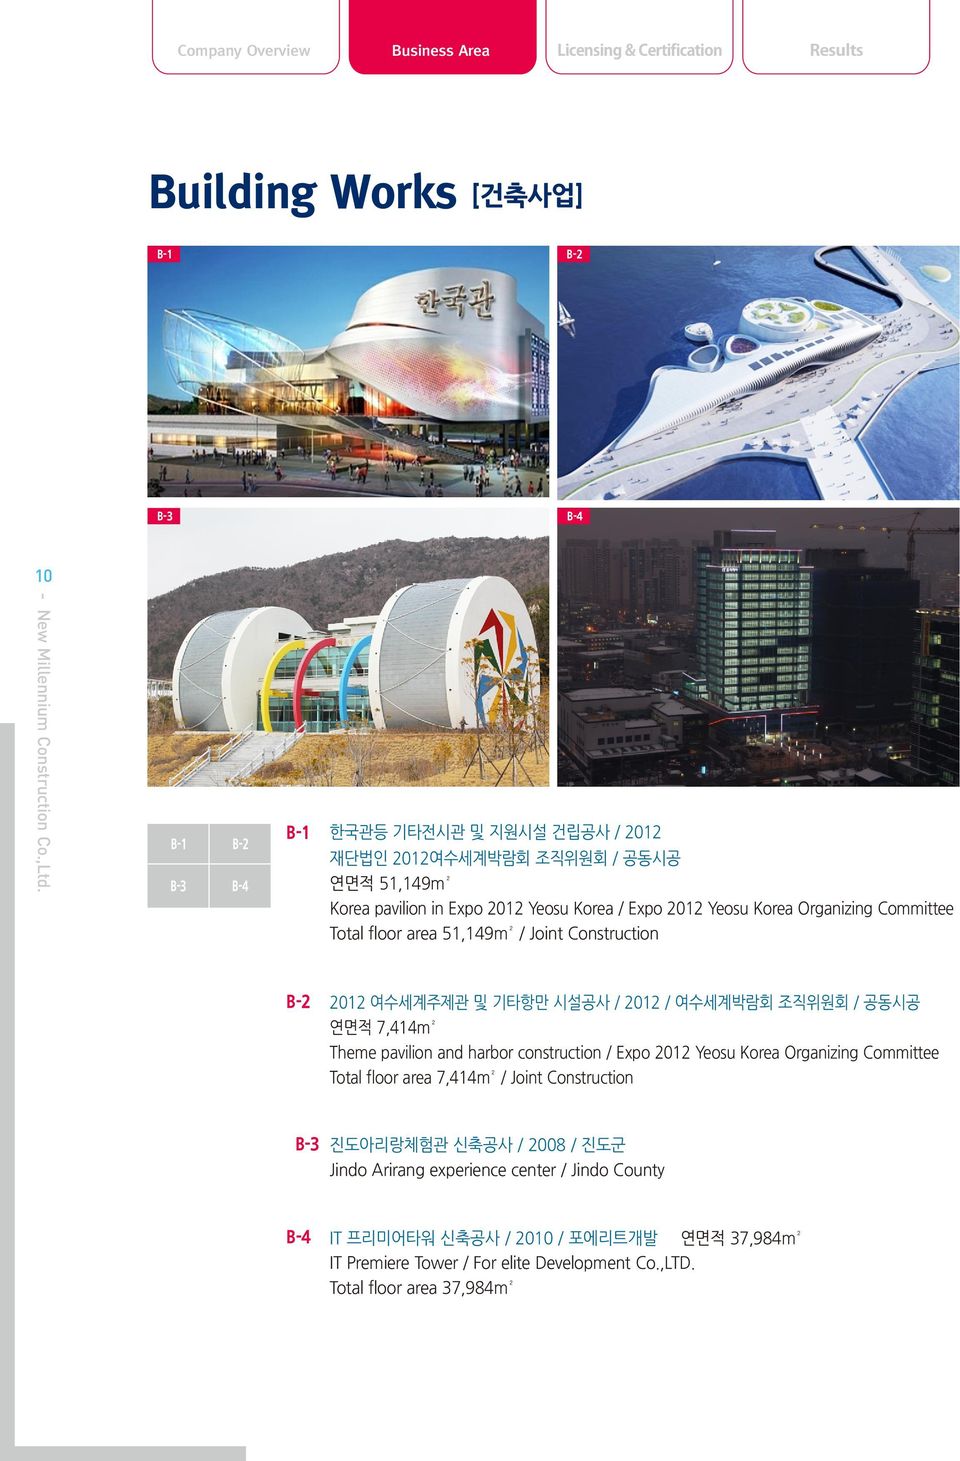 여수세계박람회 조직위원회 / 공동시공 연면적 7,414m² Theme pavilion and harbor construction / Expo 2012 Yeosu Korea Organizing Committee Total floor area 7,414m² / Joint Construction B-3 진도아리랑체험관